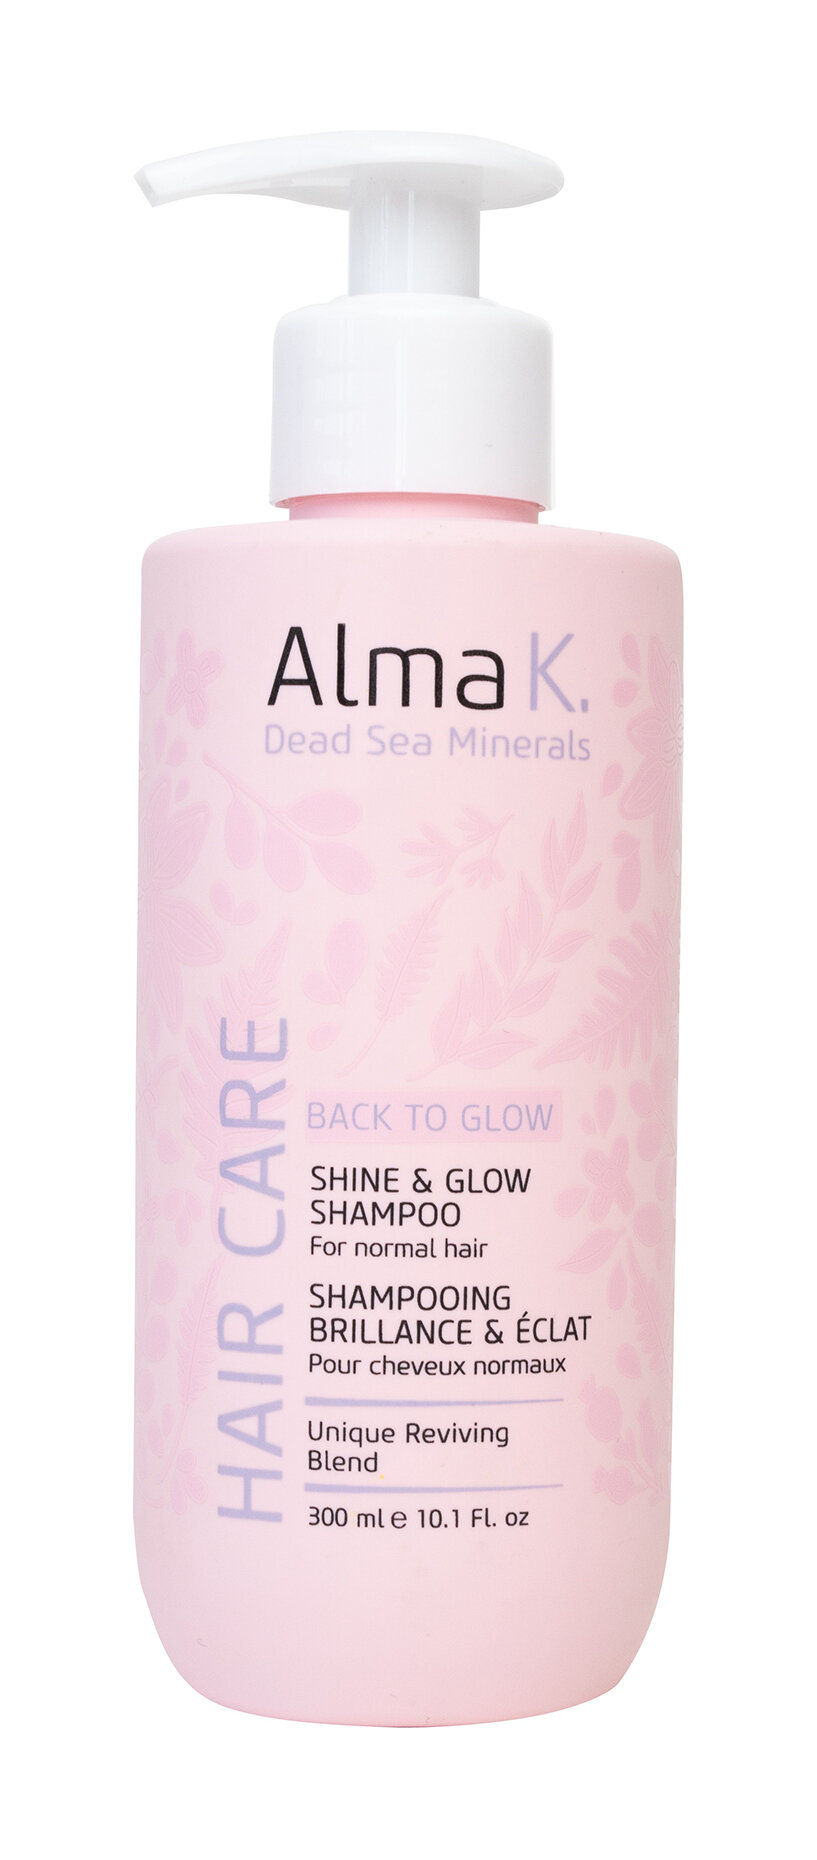 Увлажняющий шампунь для восстановления естественного сияния и блеска волос Alma K. Shine & Glow Shampoo